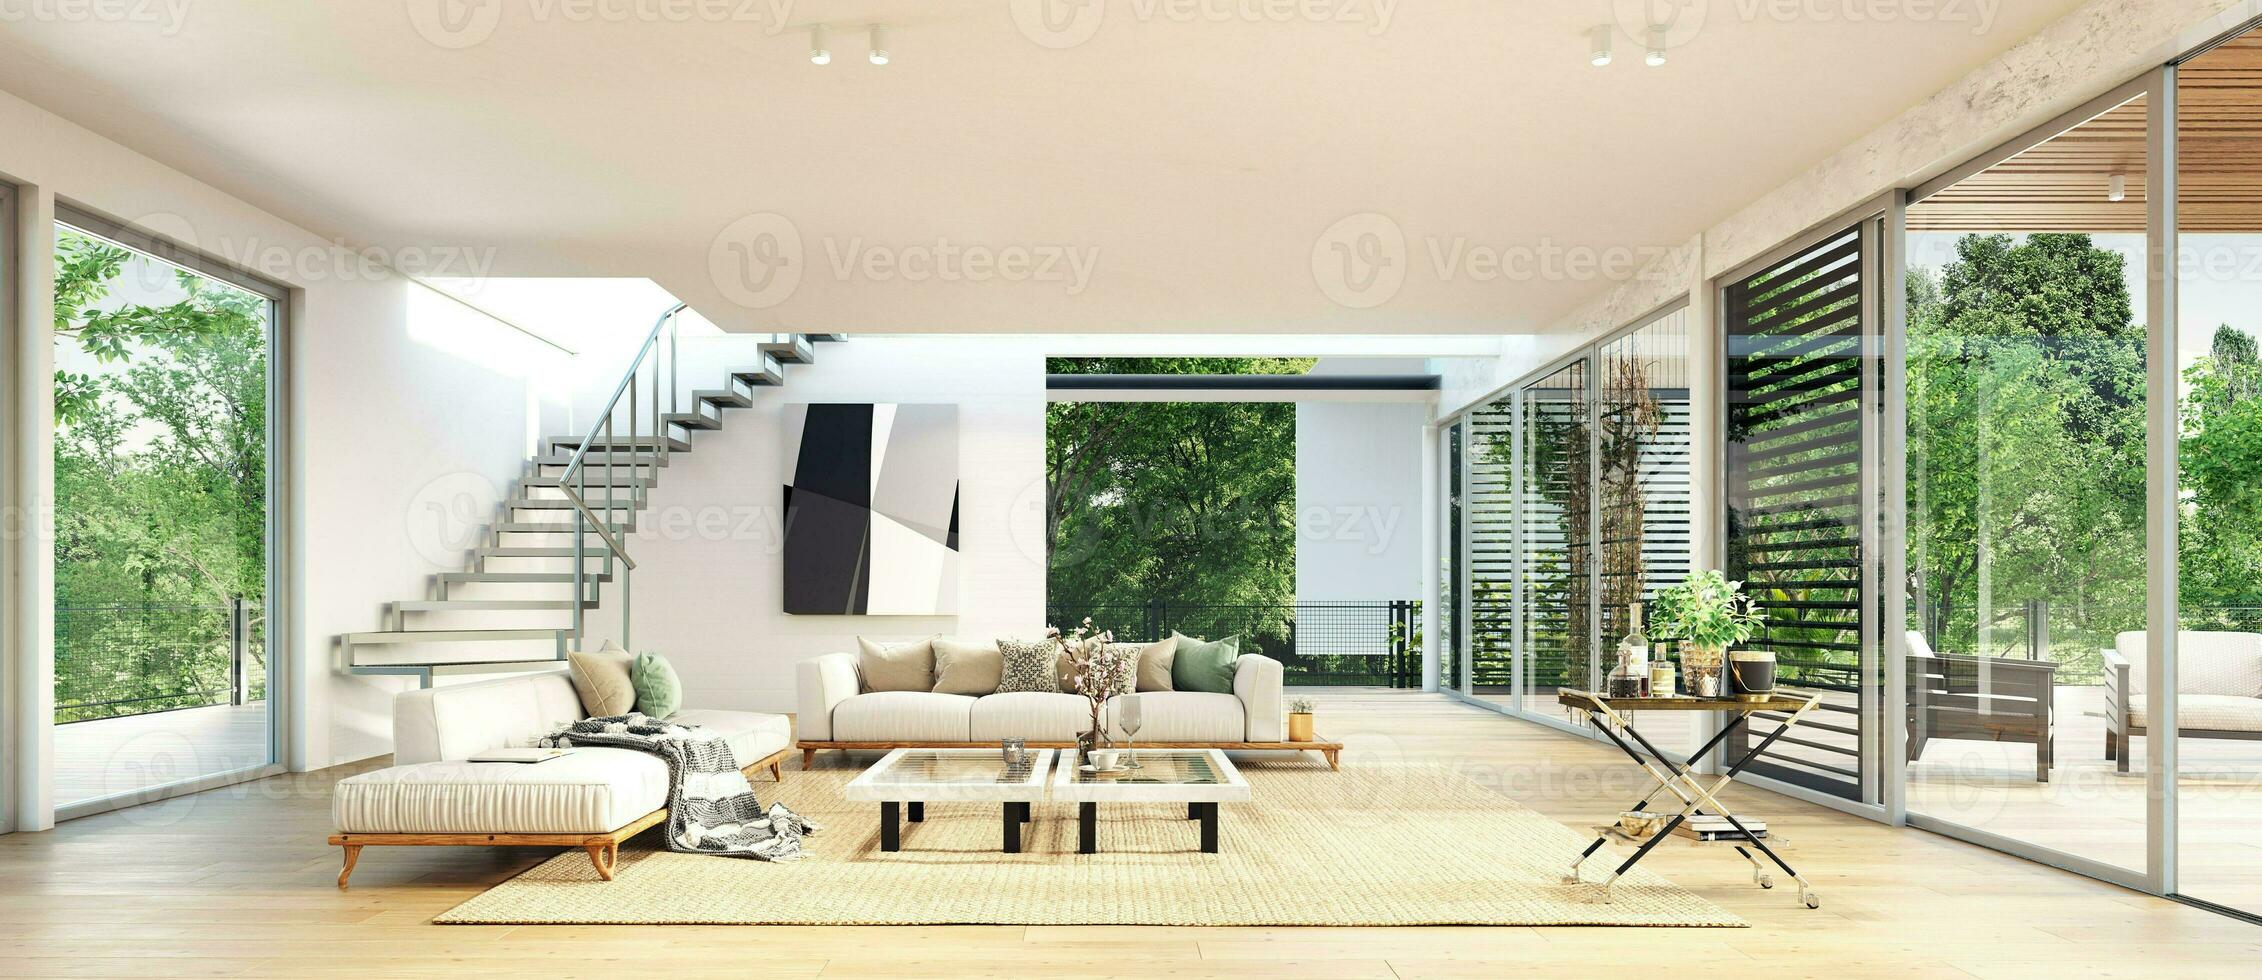 moderno lujo casa interior foto